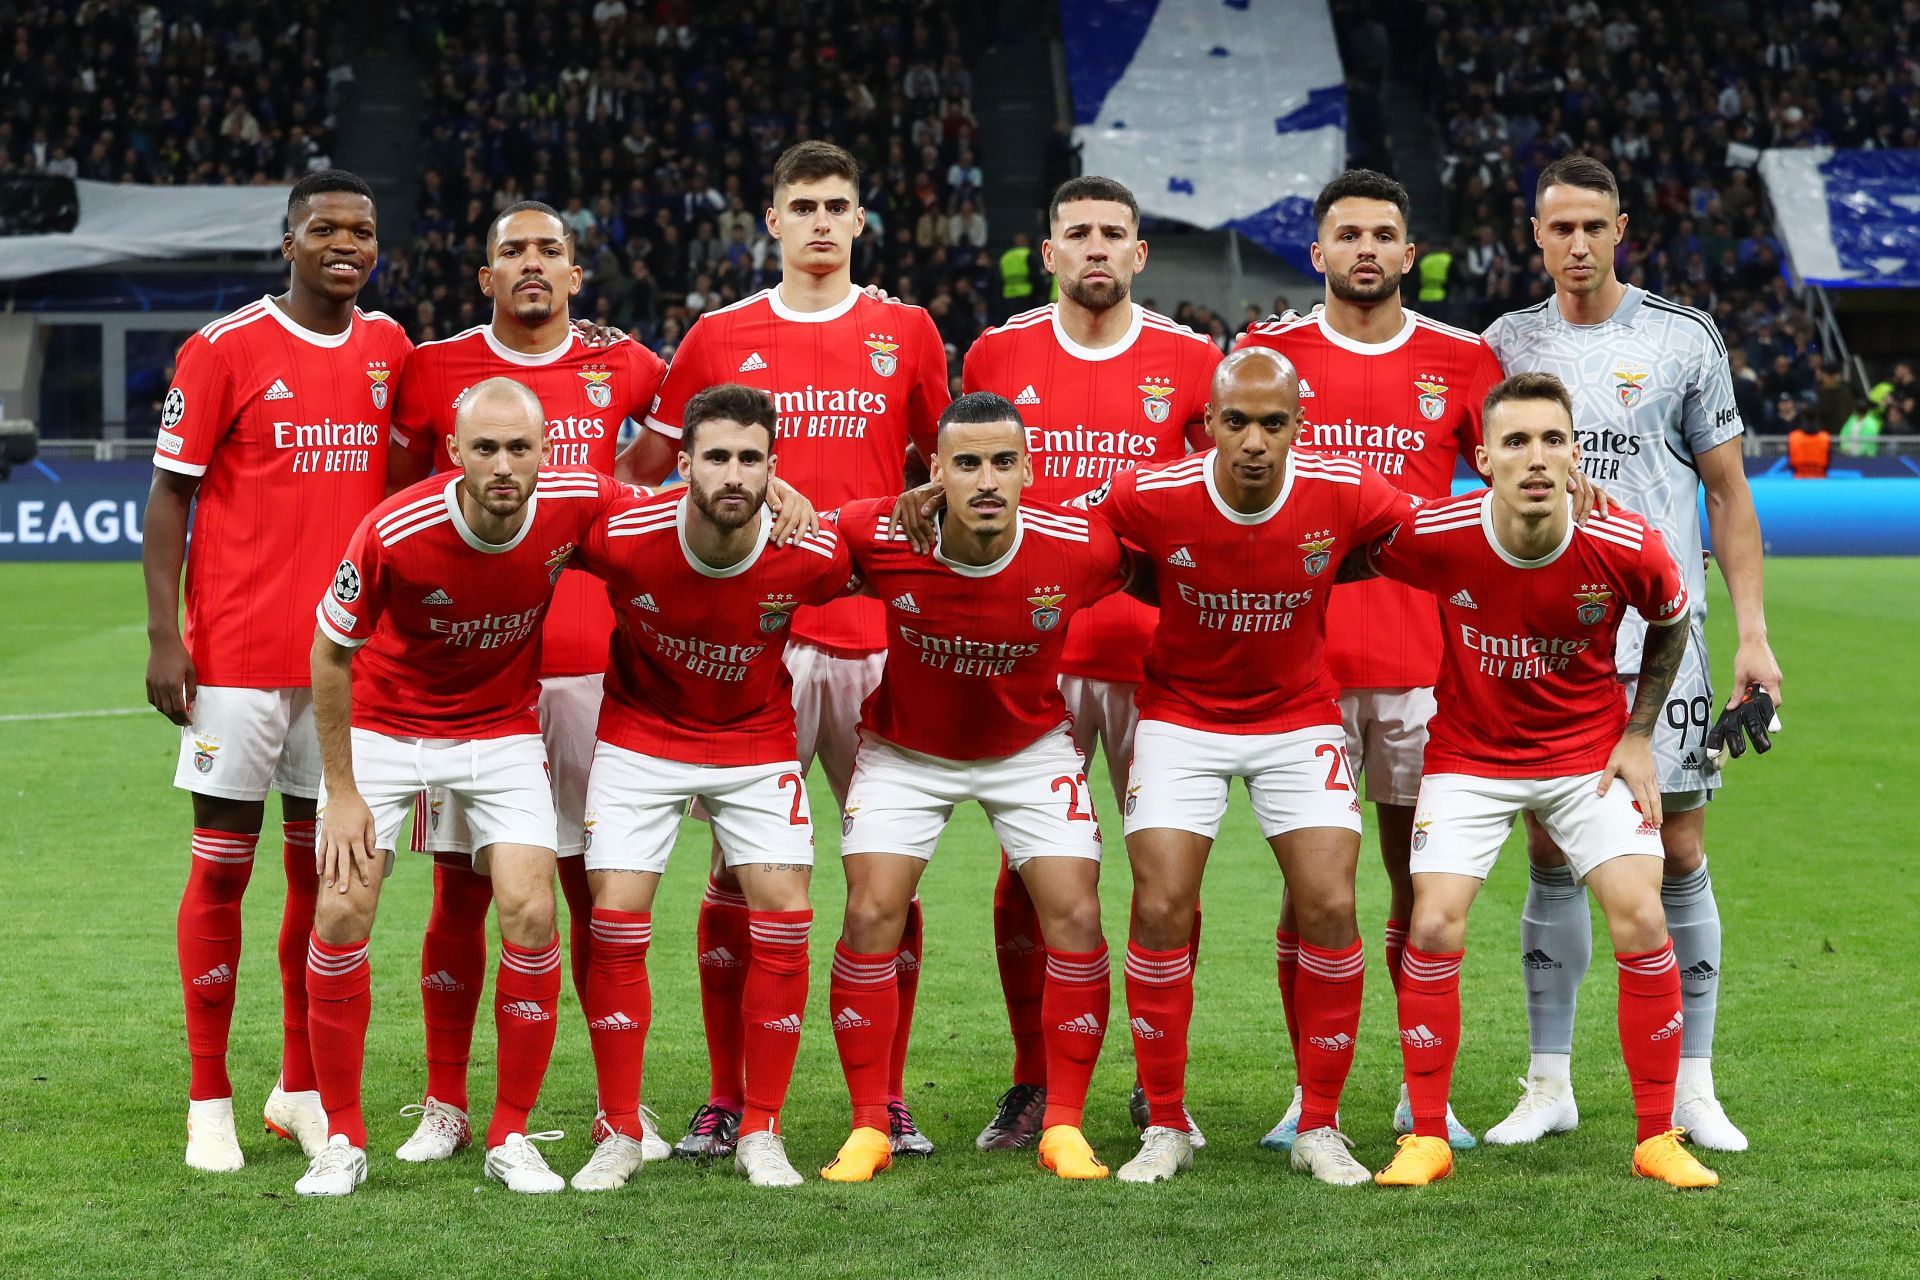 FC Internazionale v SL Benfica: Quarterfinal Second Leg - UEFA Champions League